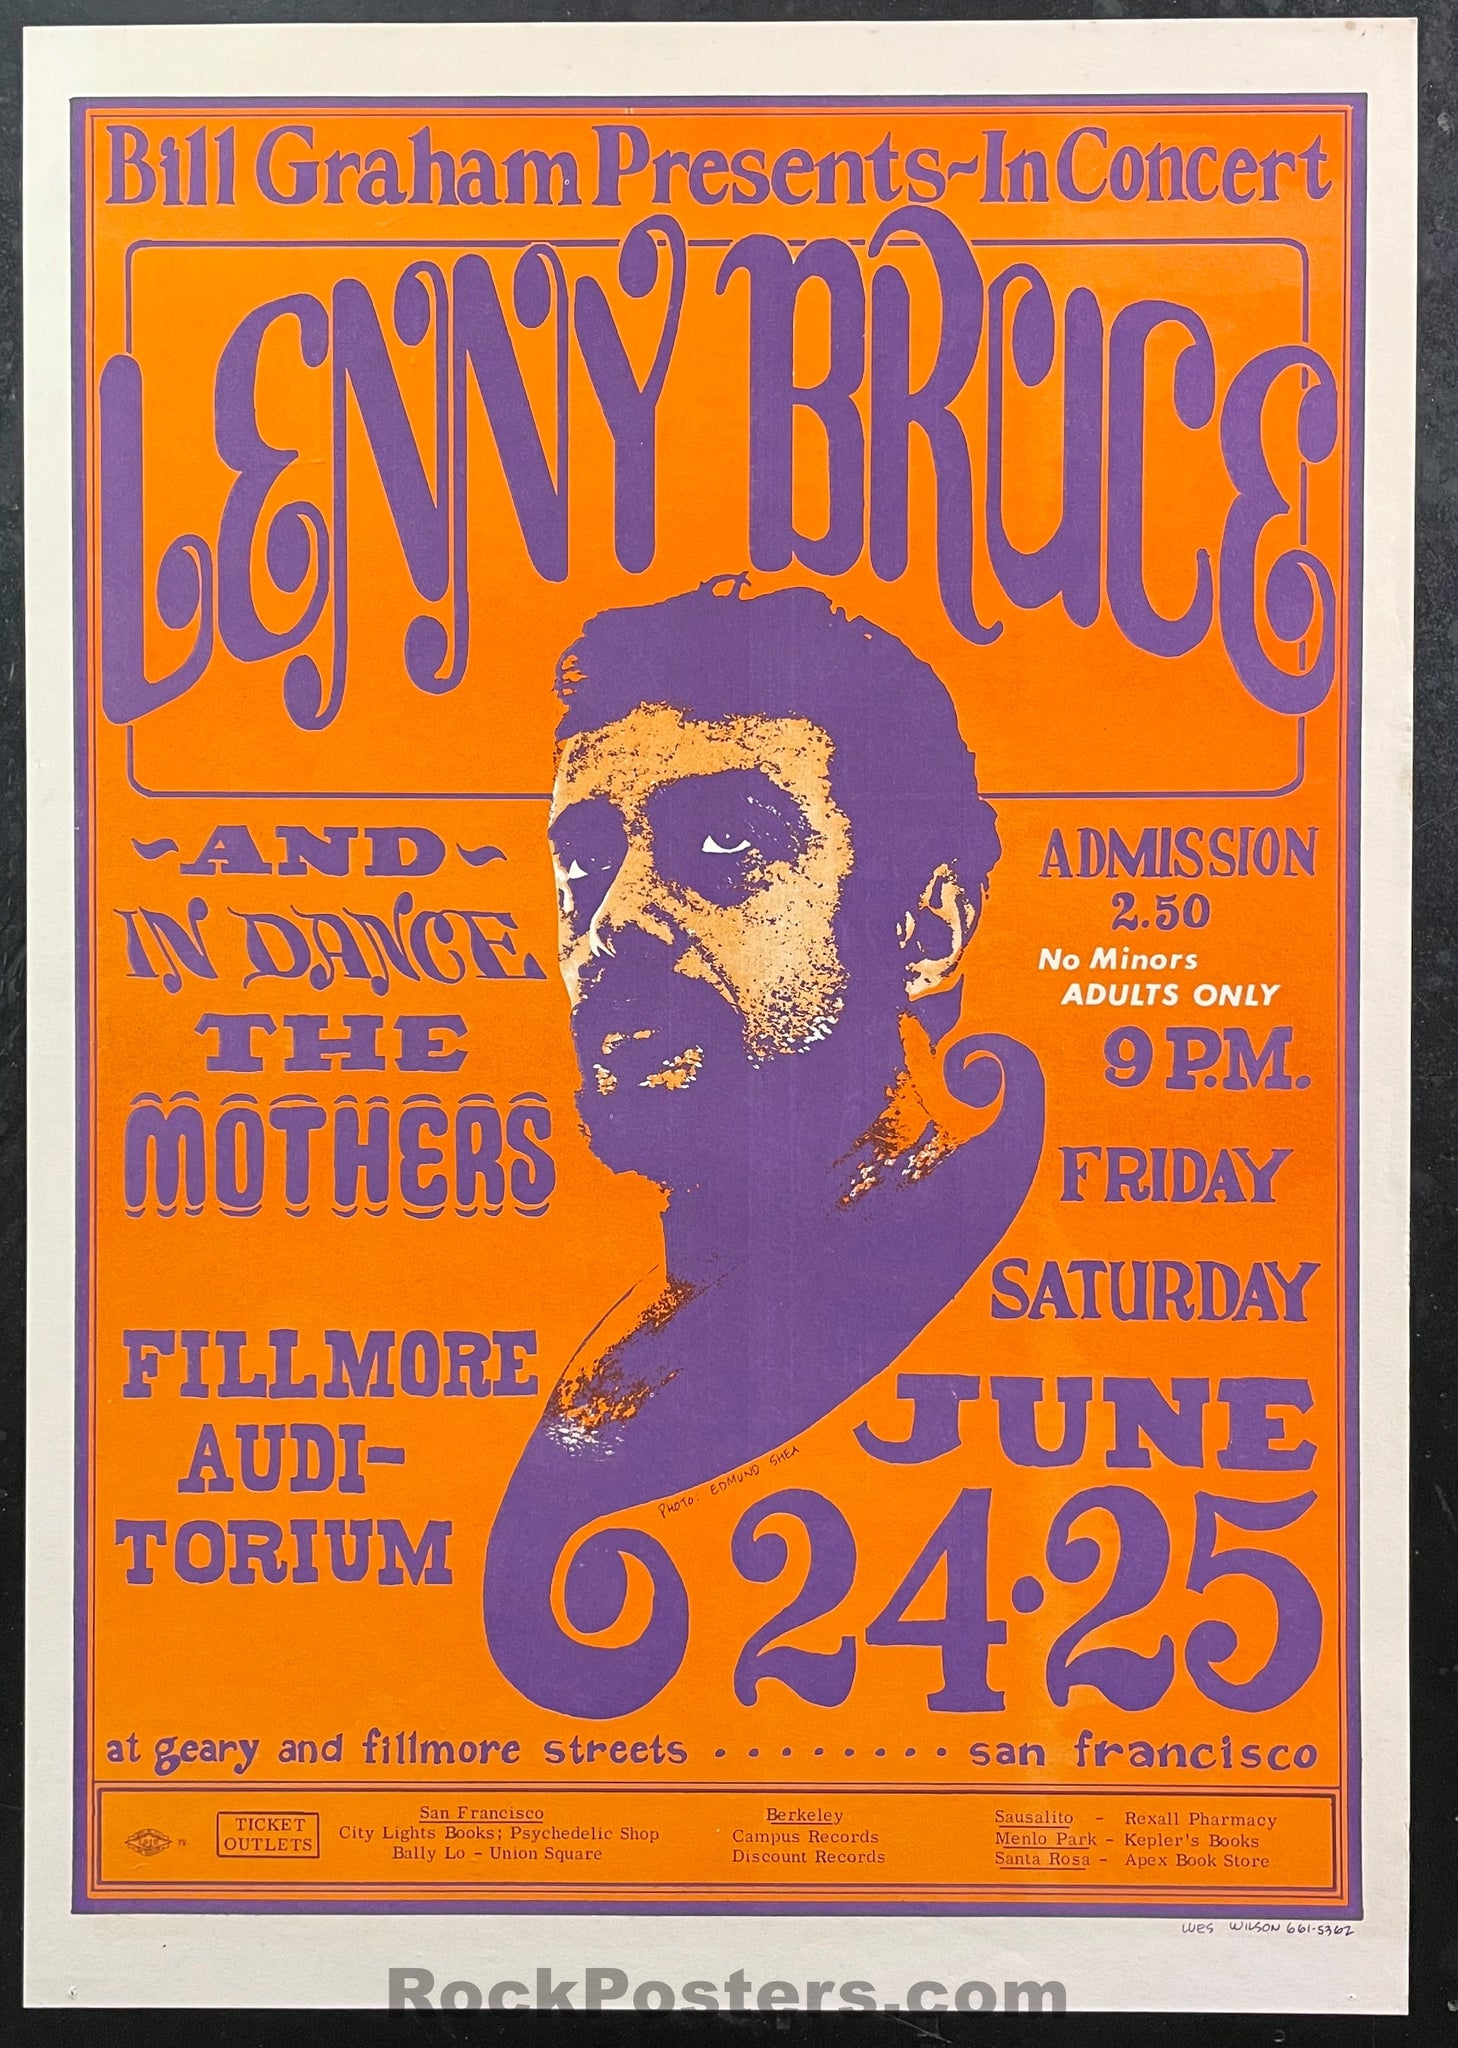 AUCTION - BG-13 - Lenny Bruce - Final Performance - 1966  Poster - Fillmore Auditorium - Excellent